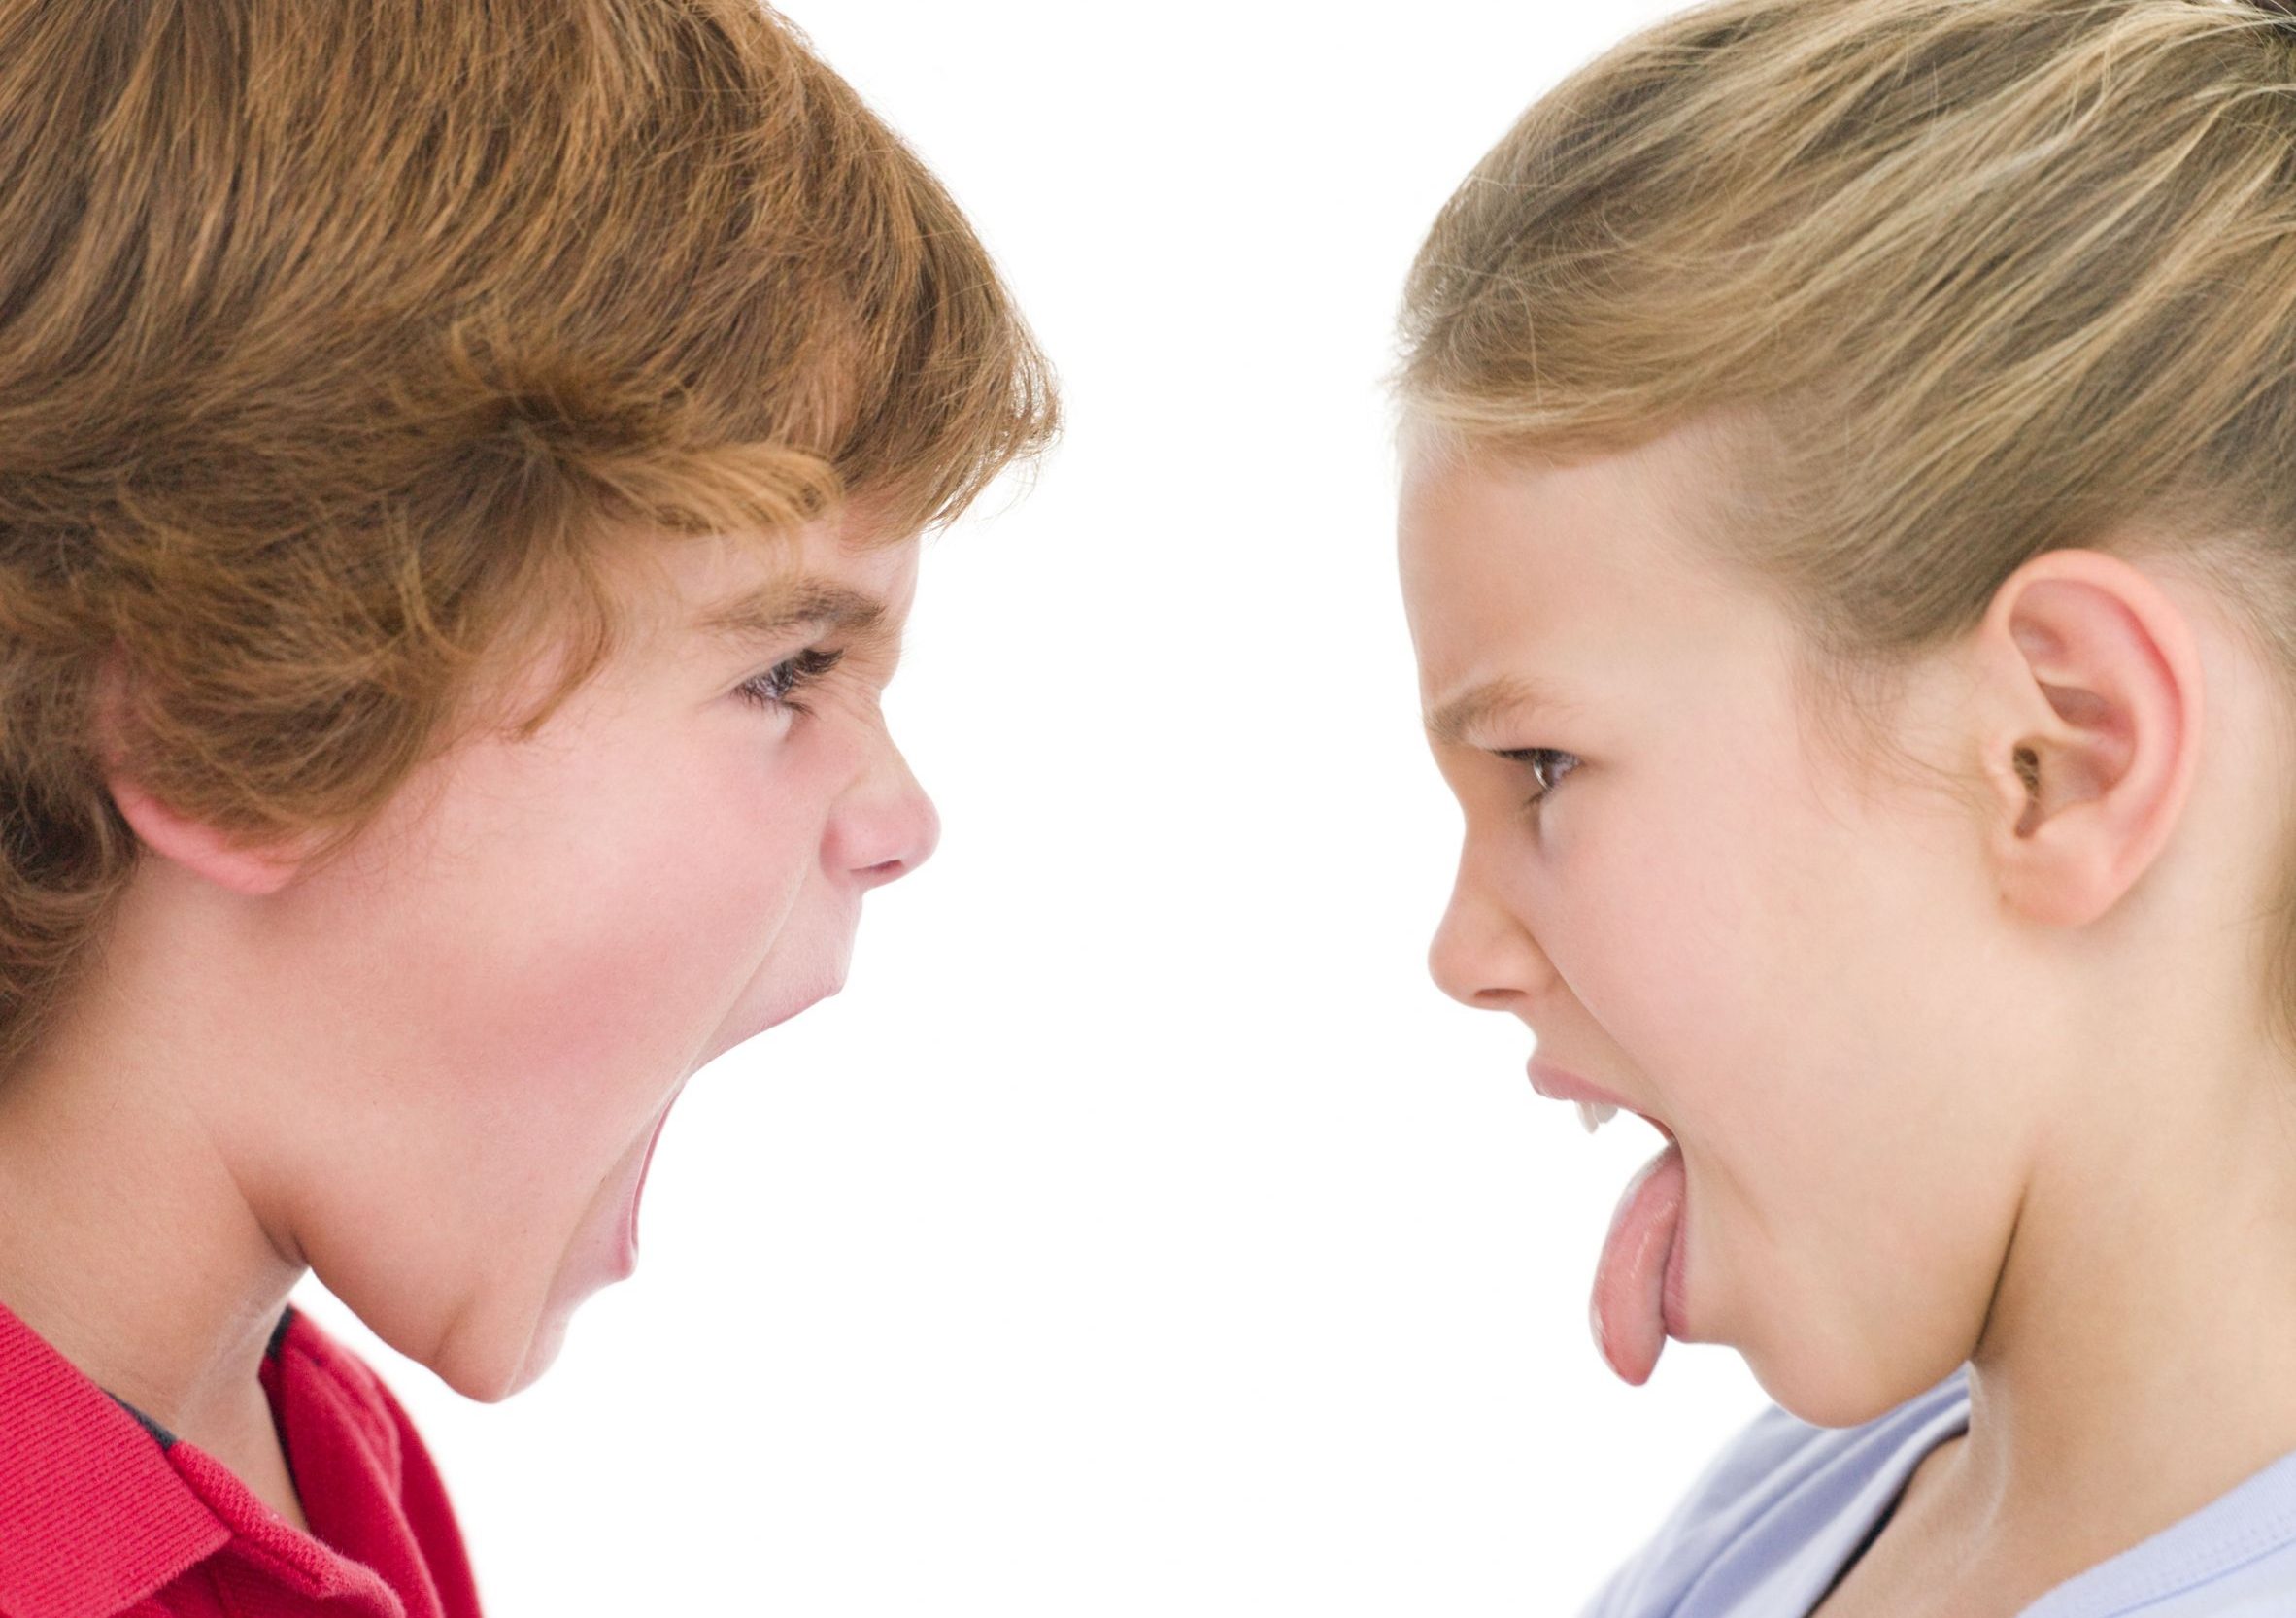 Брат и сестра спор. Конфликт между детьми. Конфликтный ребенок. Ссора между братьями. Школьники кричат друг на друга.